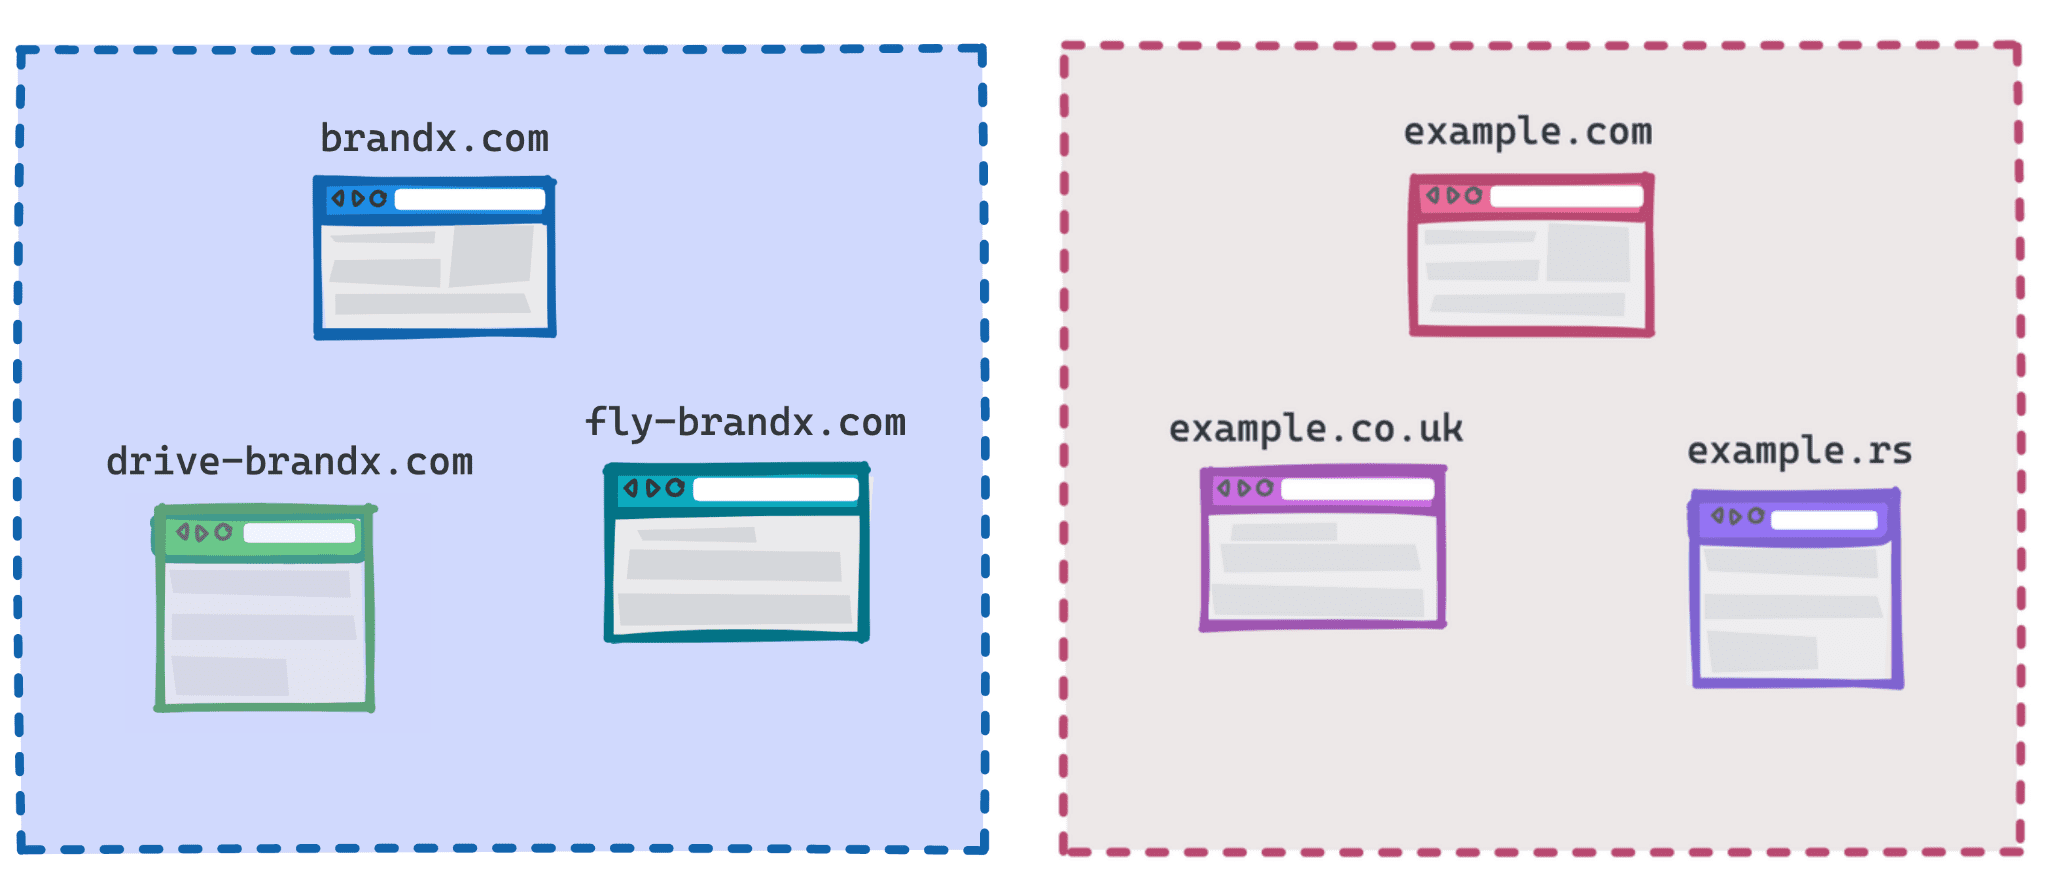 رسم بياني يُظهر Brandx.com وfly-brandx.com وdrive-brandx.com كمجموعة واحدة، وexample.com وexample.rs وexample.co.uk كمجموعة أخرى.